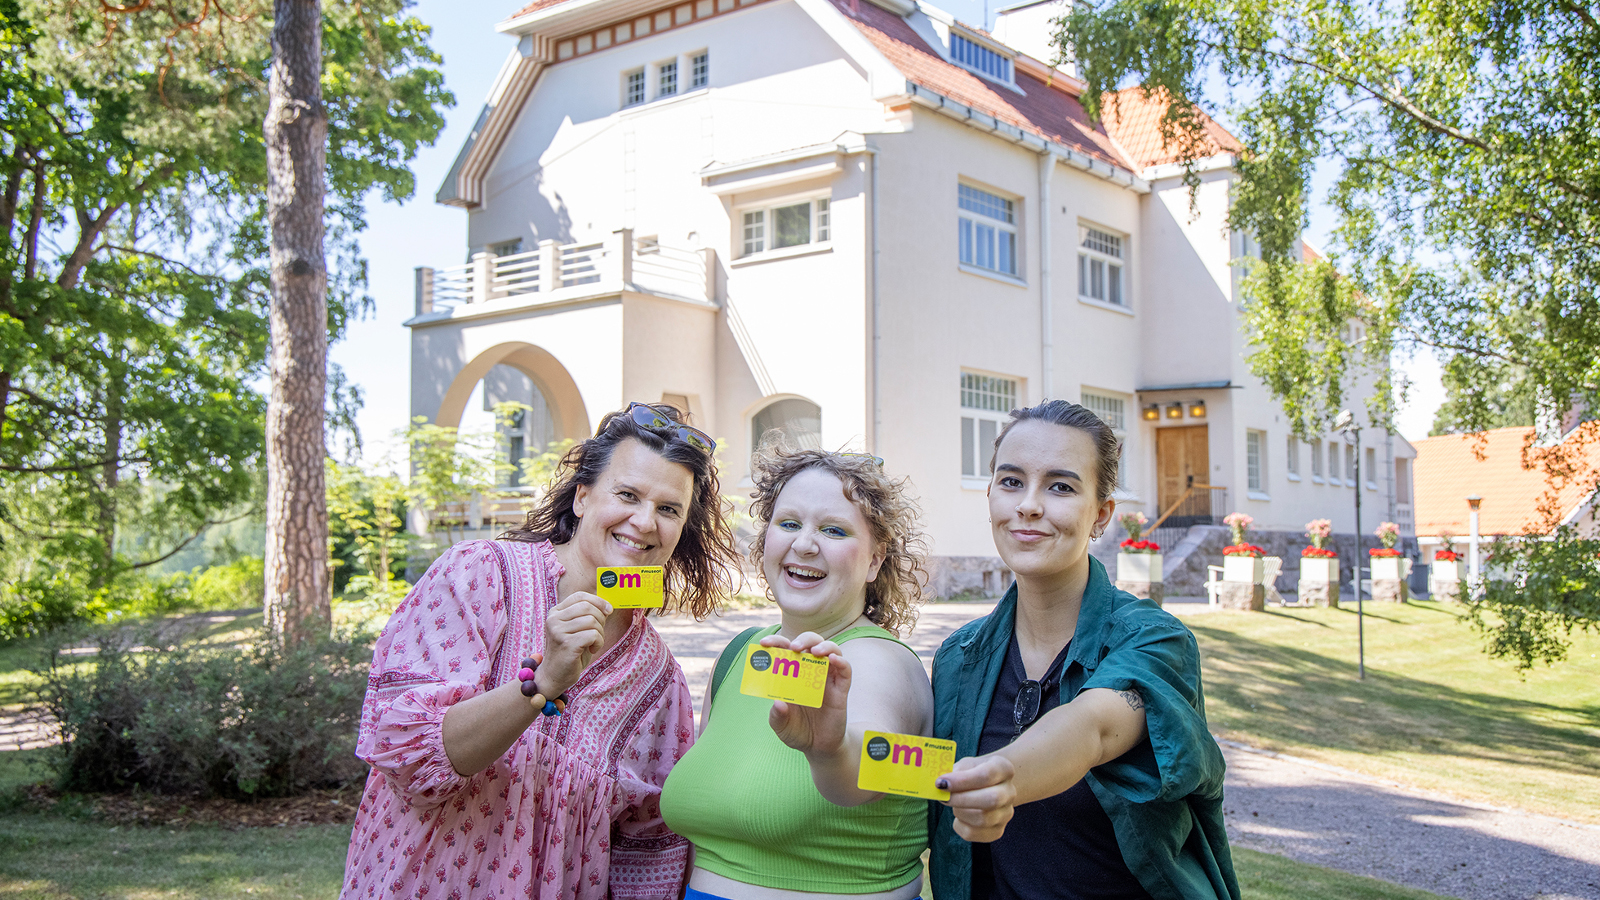 Kuvassa on taustalla Tamminiemen päärakennus, joka on vaalea jugend-talo.  Edustalla on kolme naista vierekkäin ja he näyttävät kaikki museokorttia.